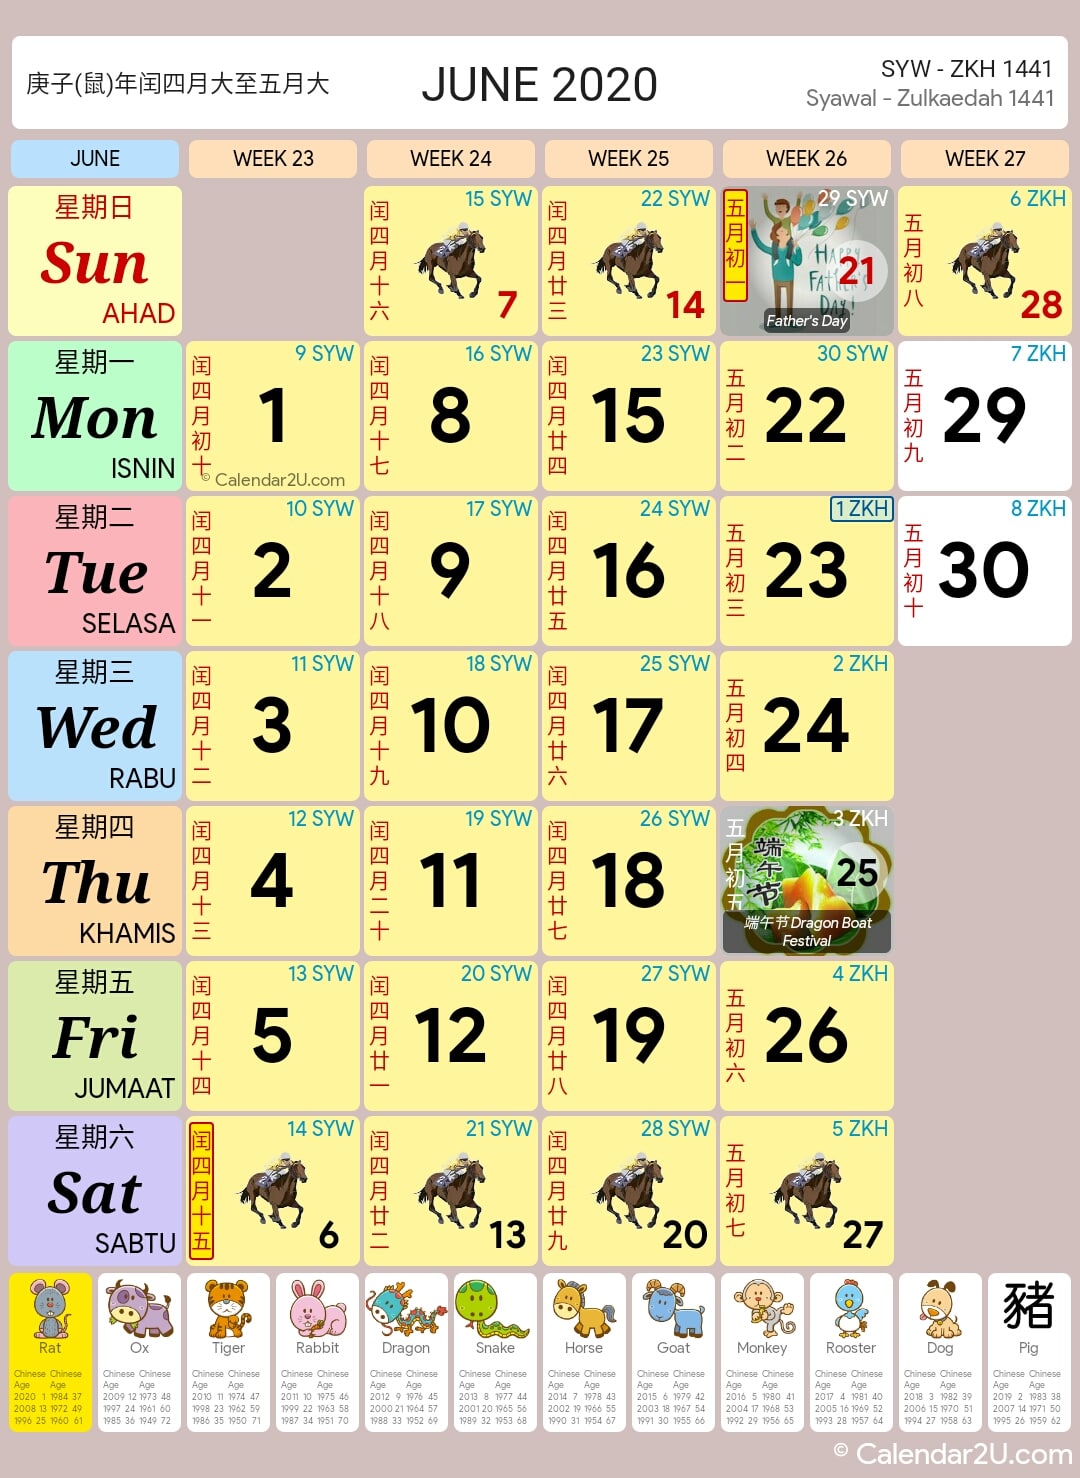 Singapore Calendar Year 2020 - Singapore Calendar1080 x 1478